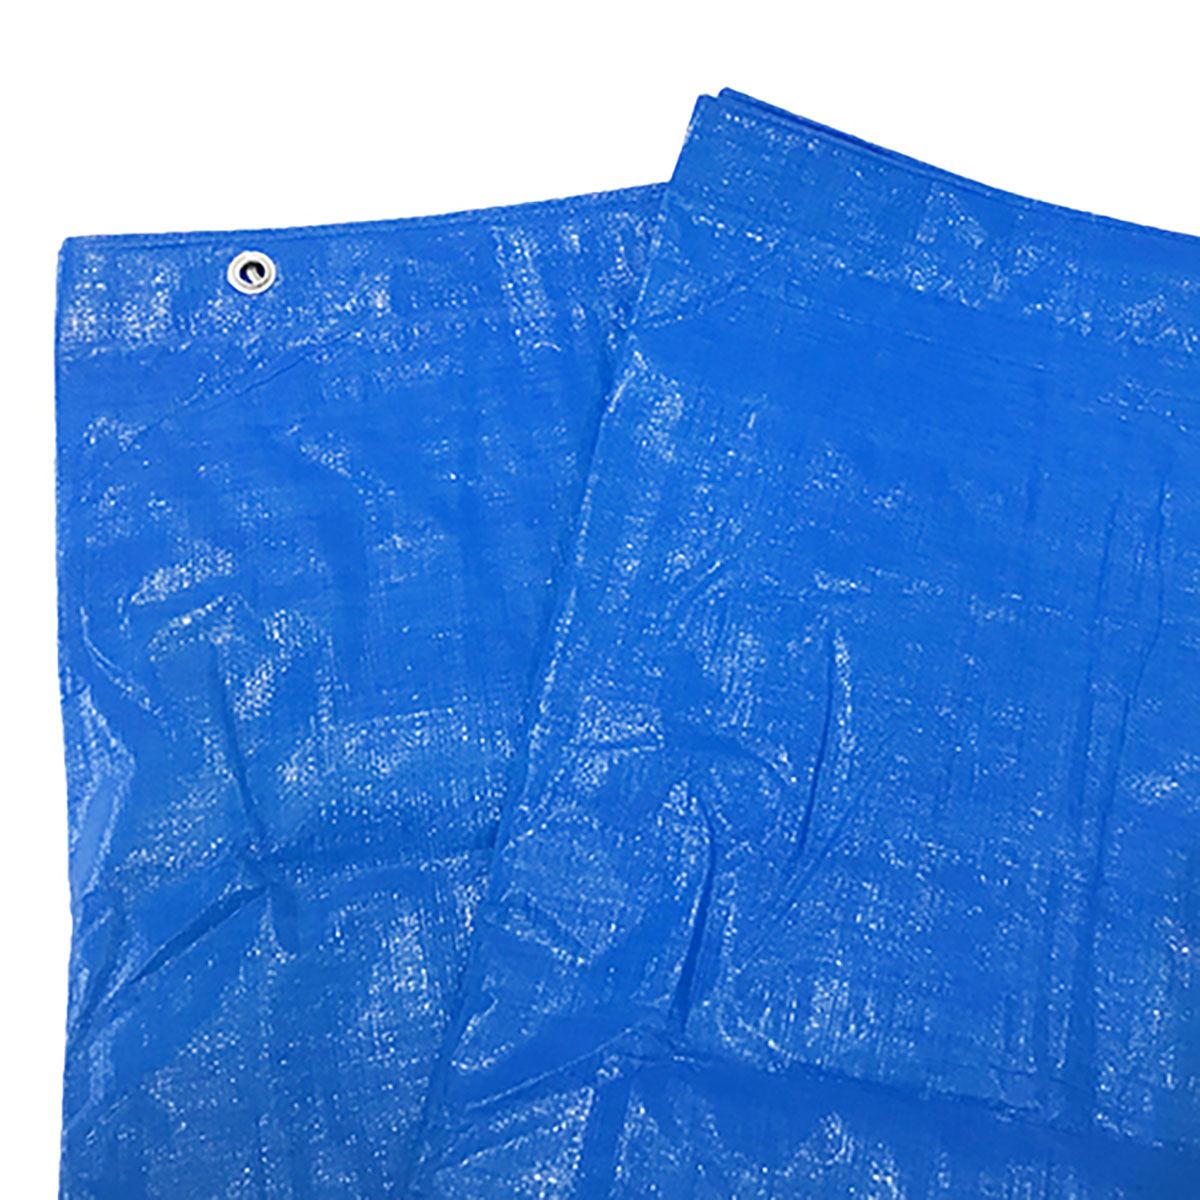 ブルーシート 巾約1.7×長さ約1.7m #3000